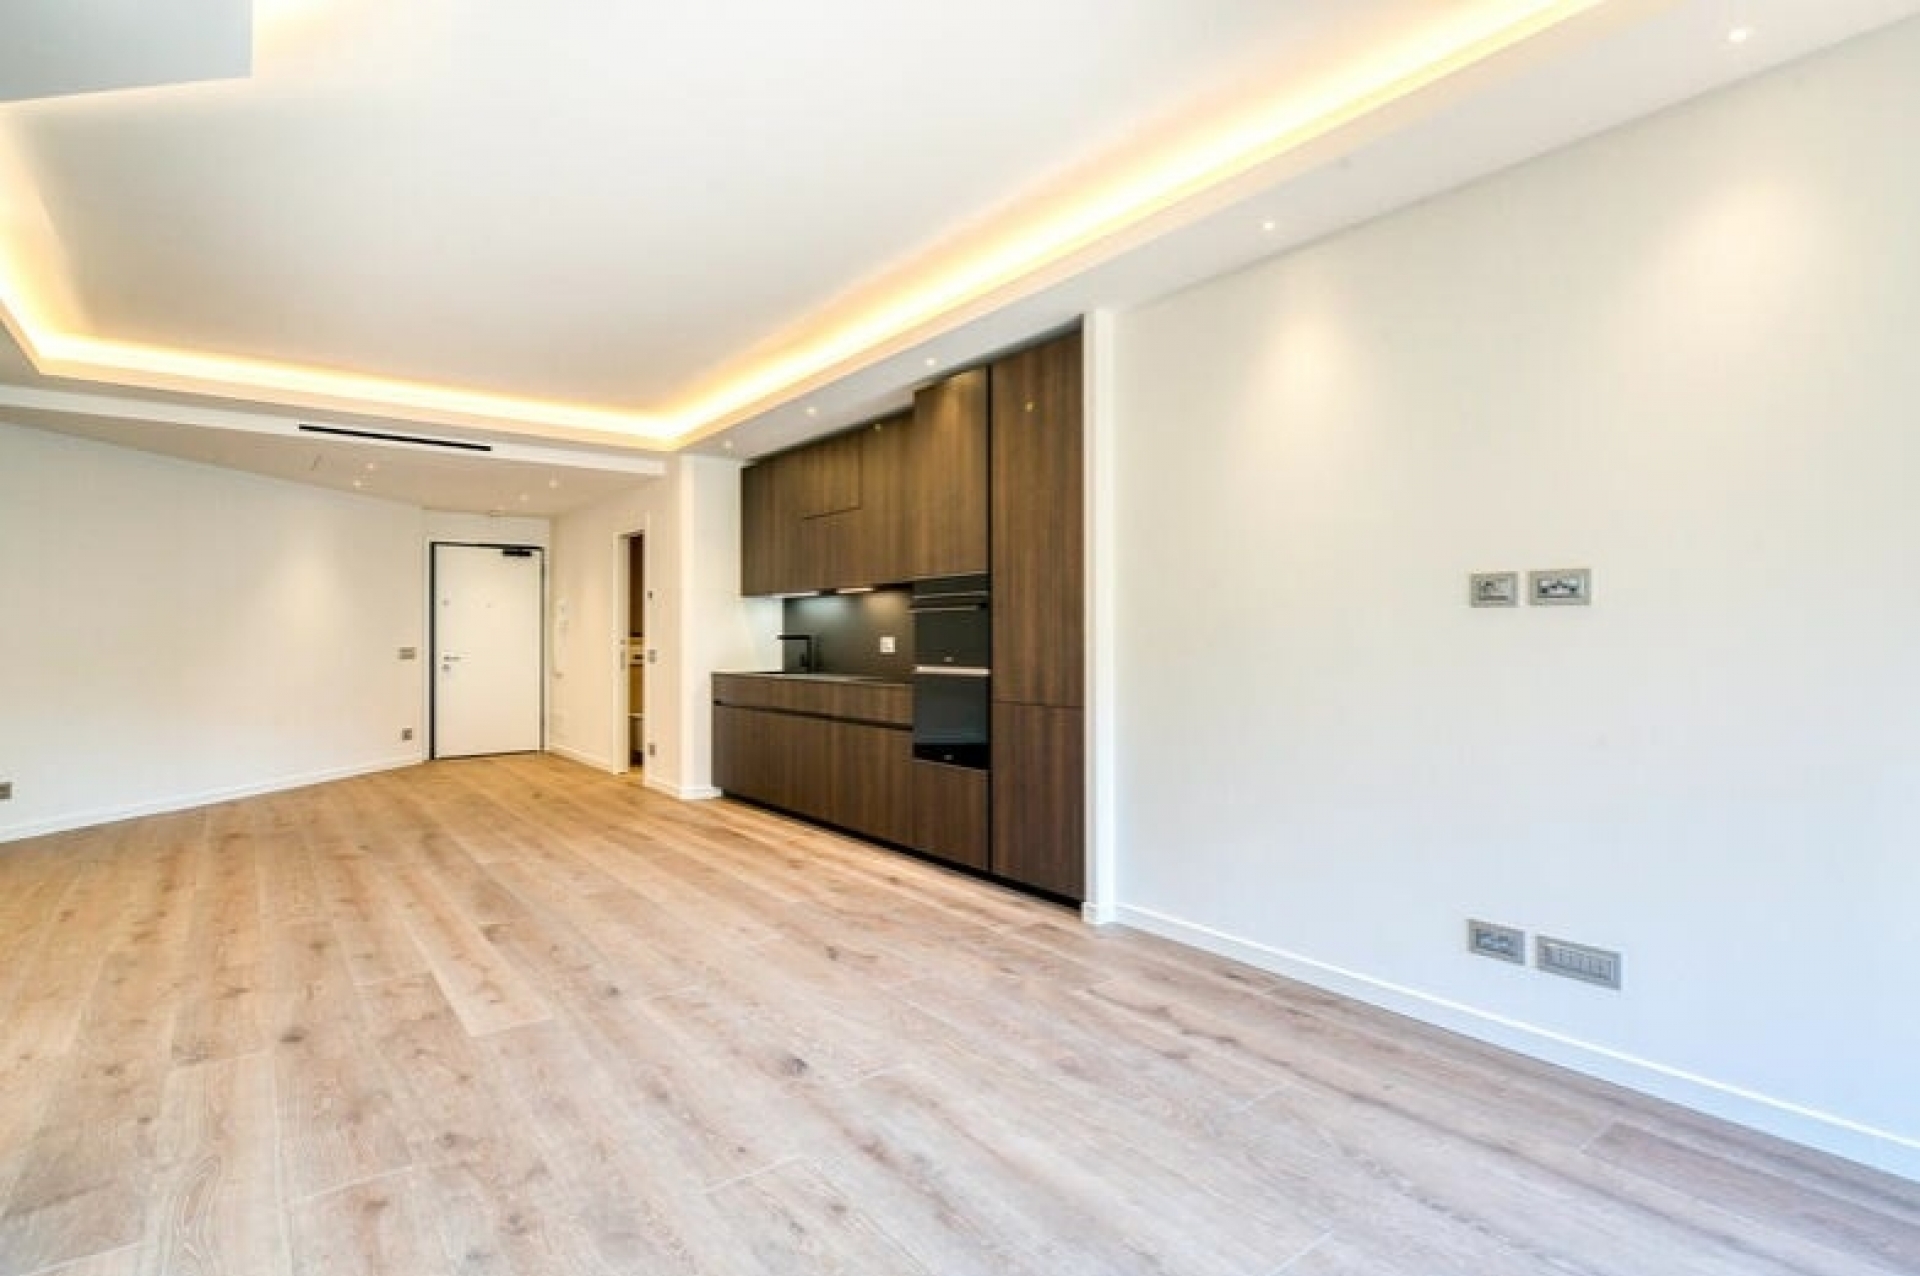 Dotta Appartement de 2 pieces a vendre - PARC SAINT ROMAN - La Rousse - Monaco - imgimage1